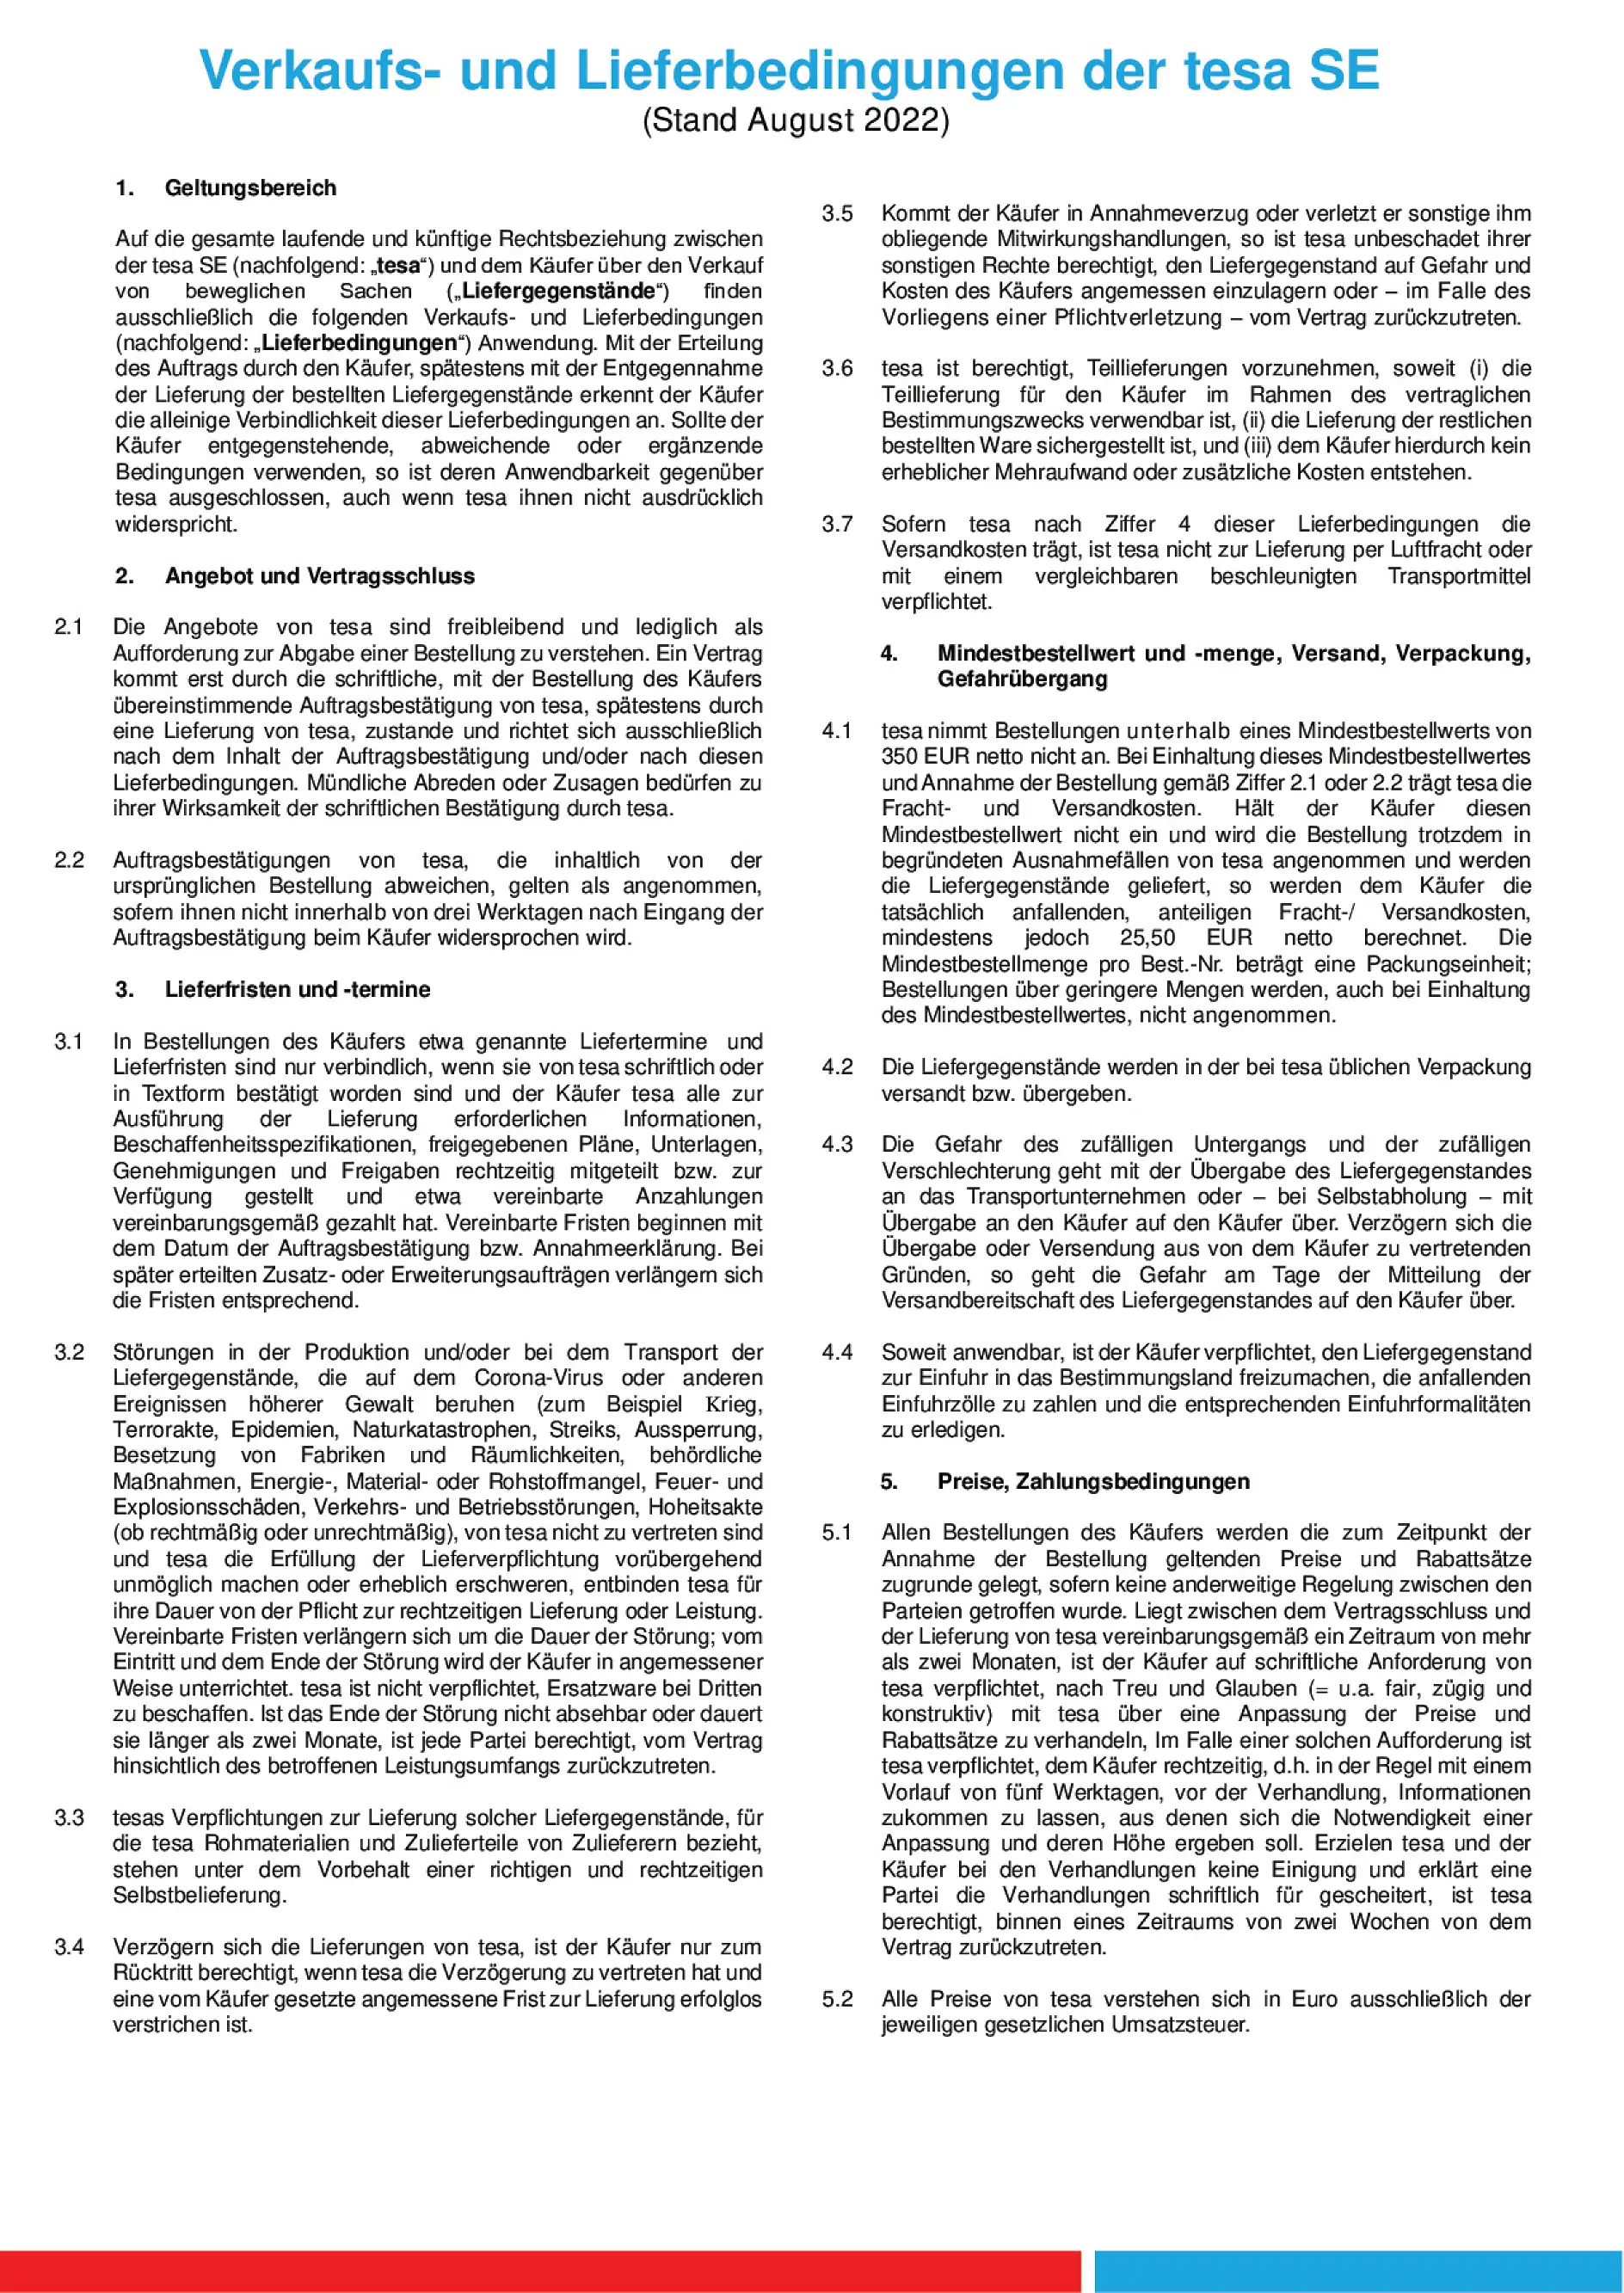 Allgemeine Verkaufs- und Lieferbedingungen der tesa SE (B2B)